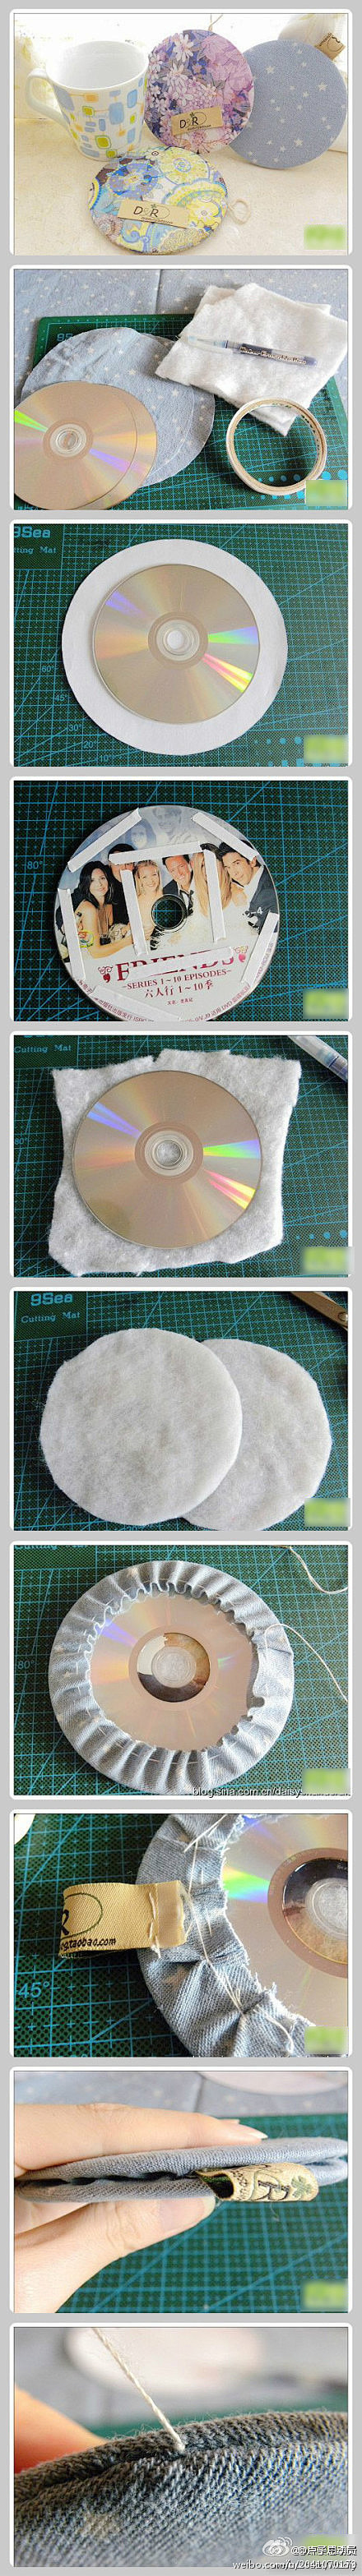 【杯垫DIY】旧光碟DIY变身杯垫